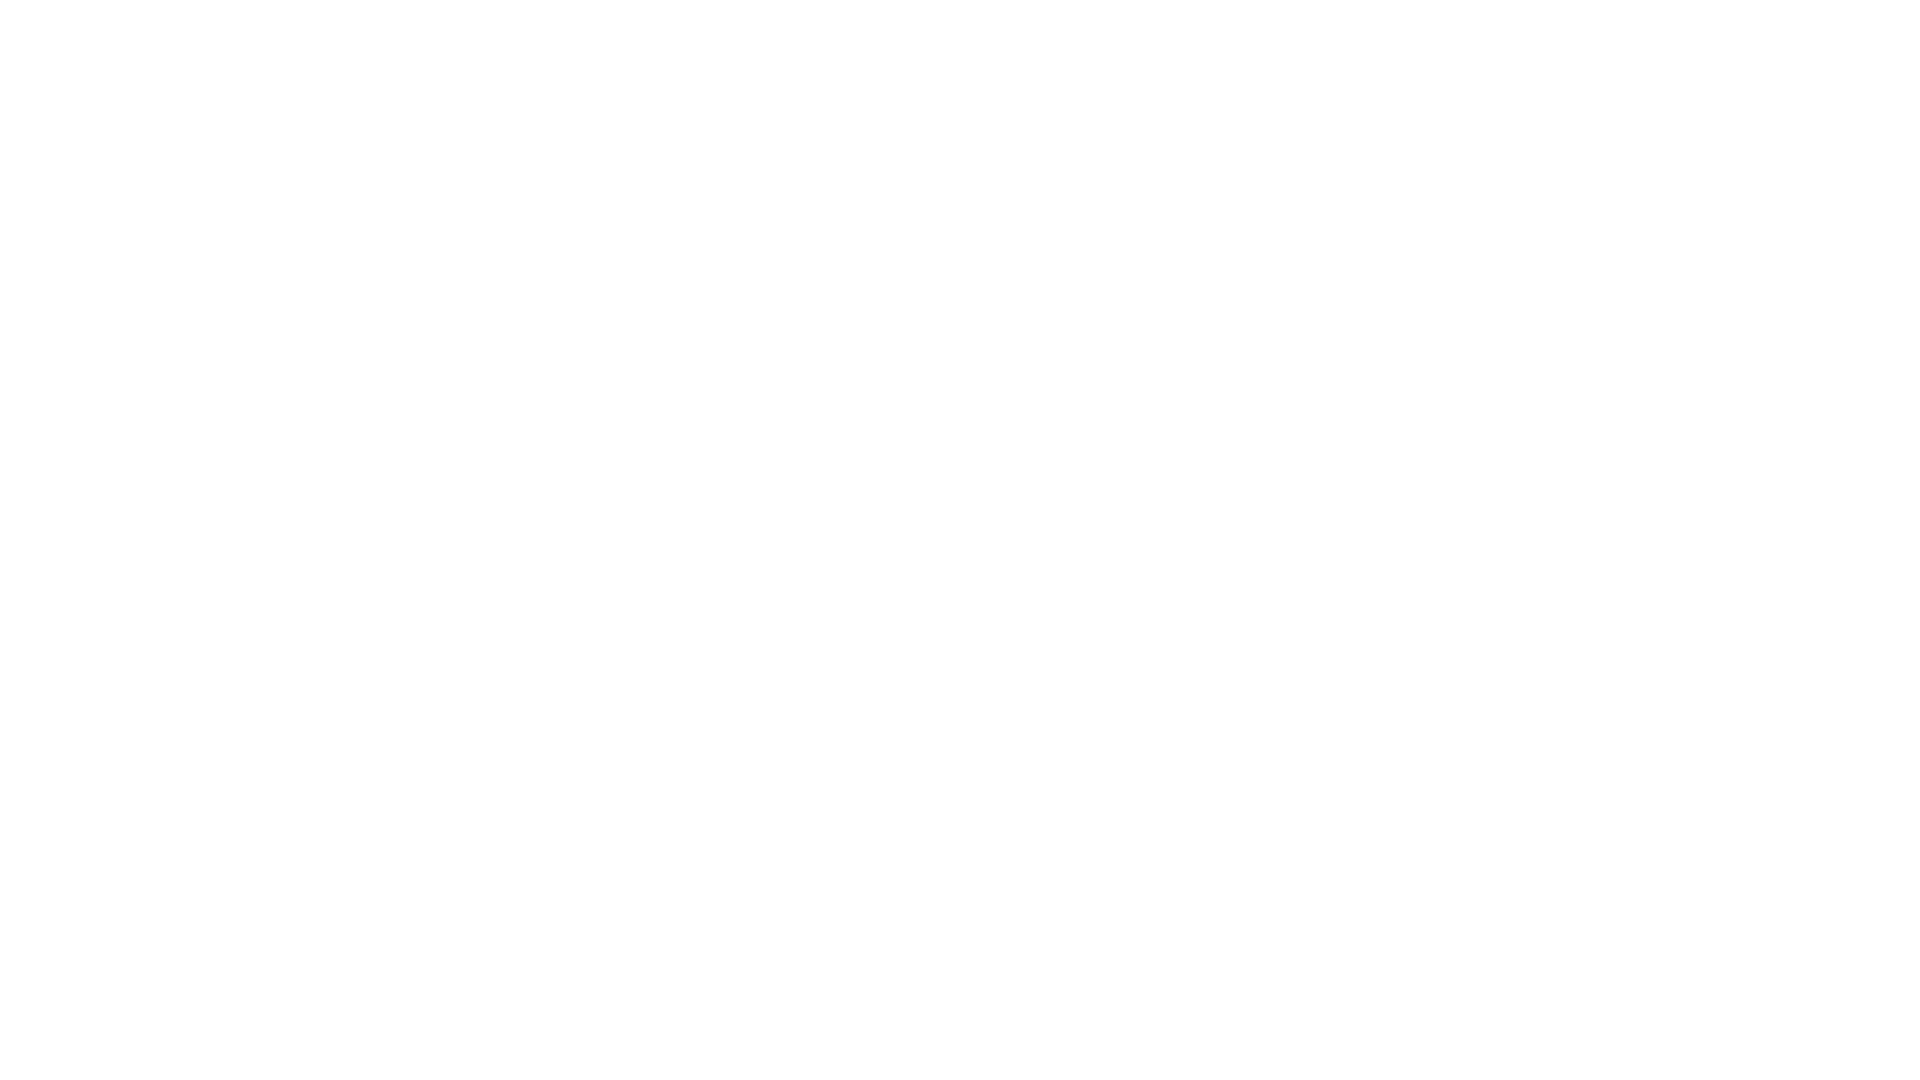 TCA Group